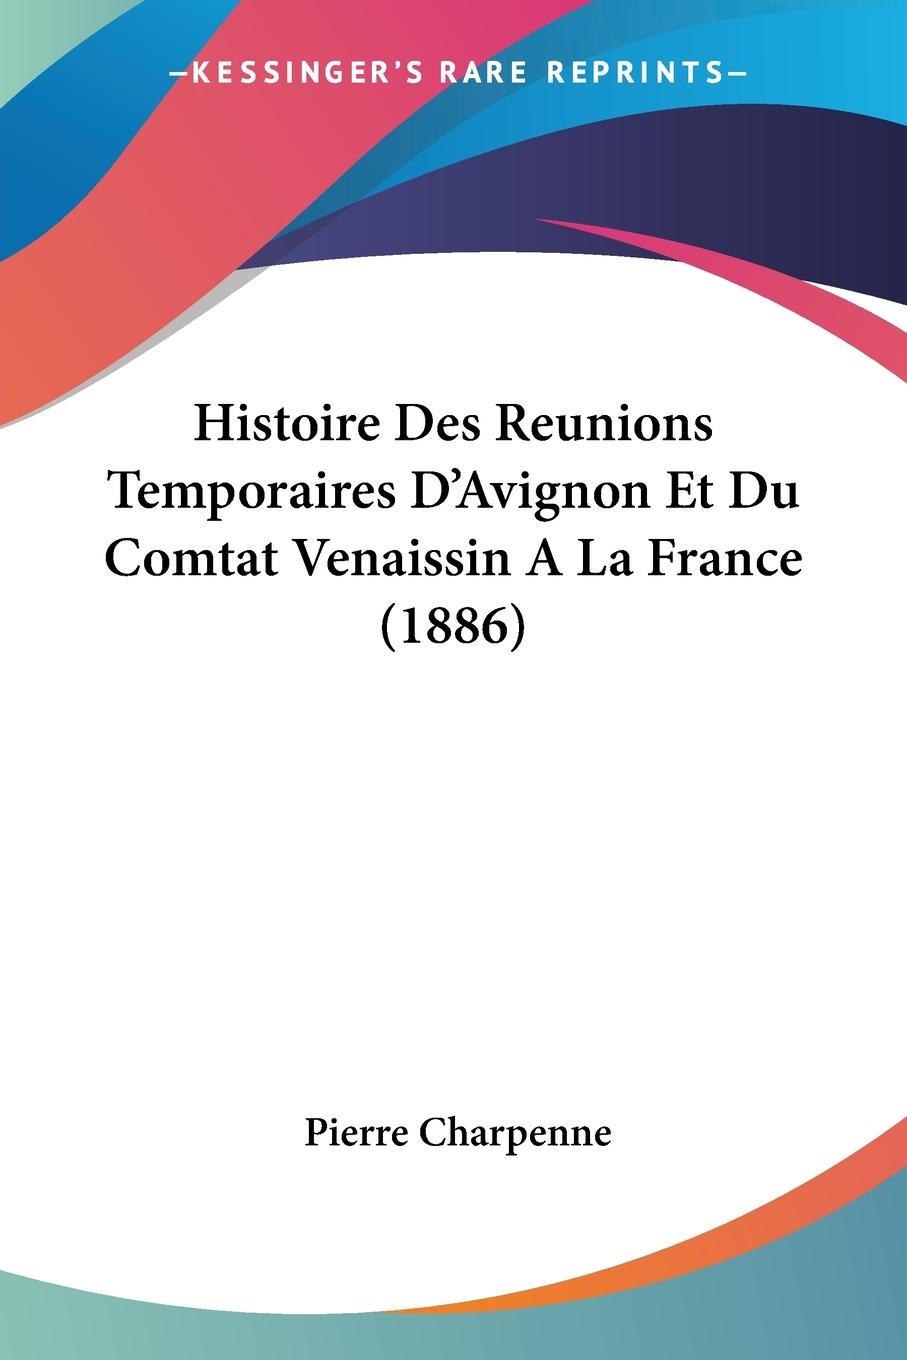 Histoire Des Reunions Temporaires D Avignon Et Du Comtat Venaissin ALa France (1886) - Charpenne, Pierre